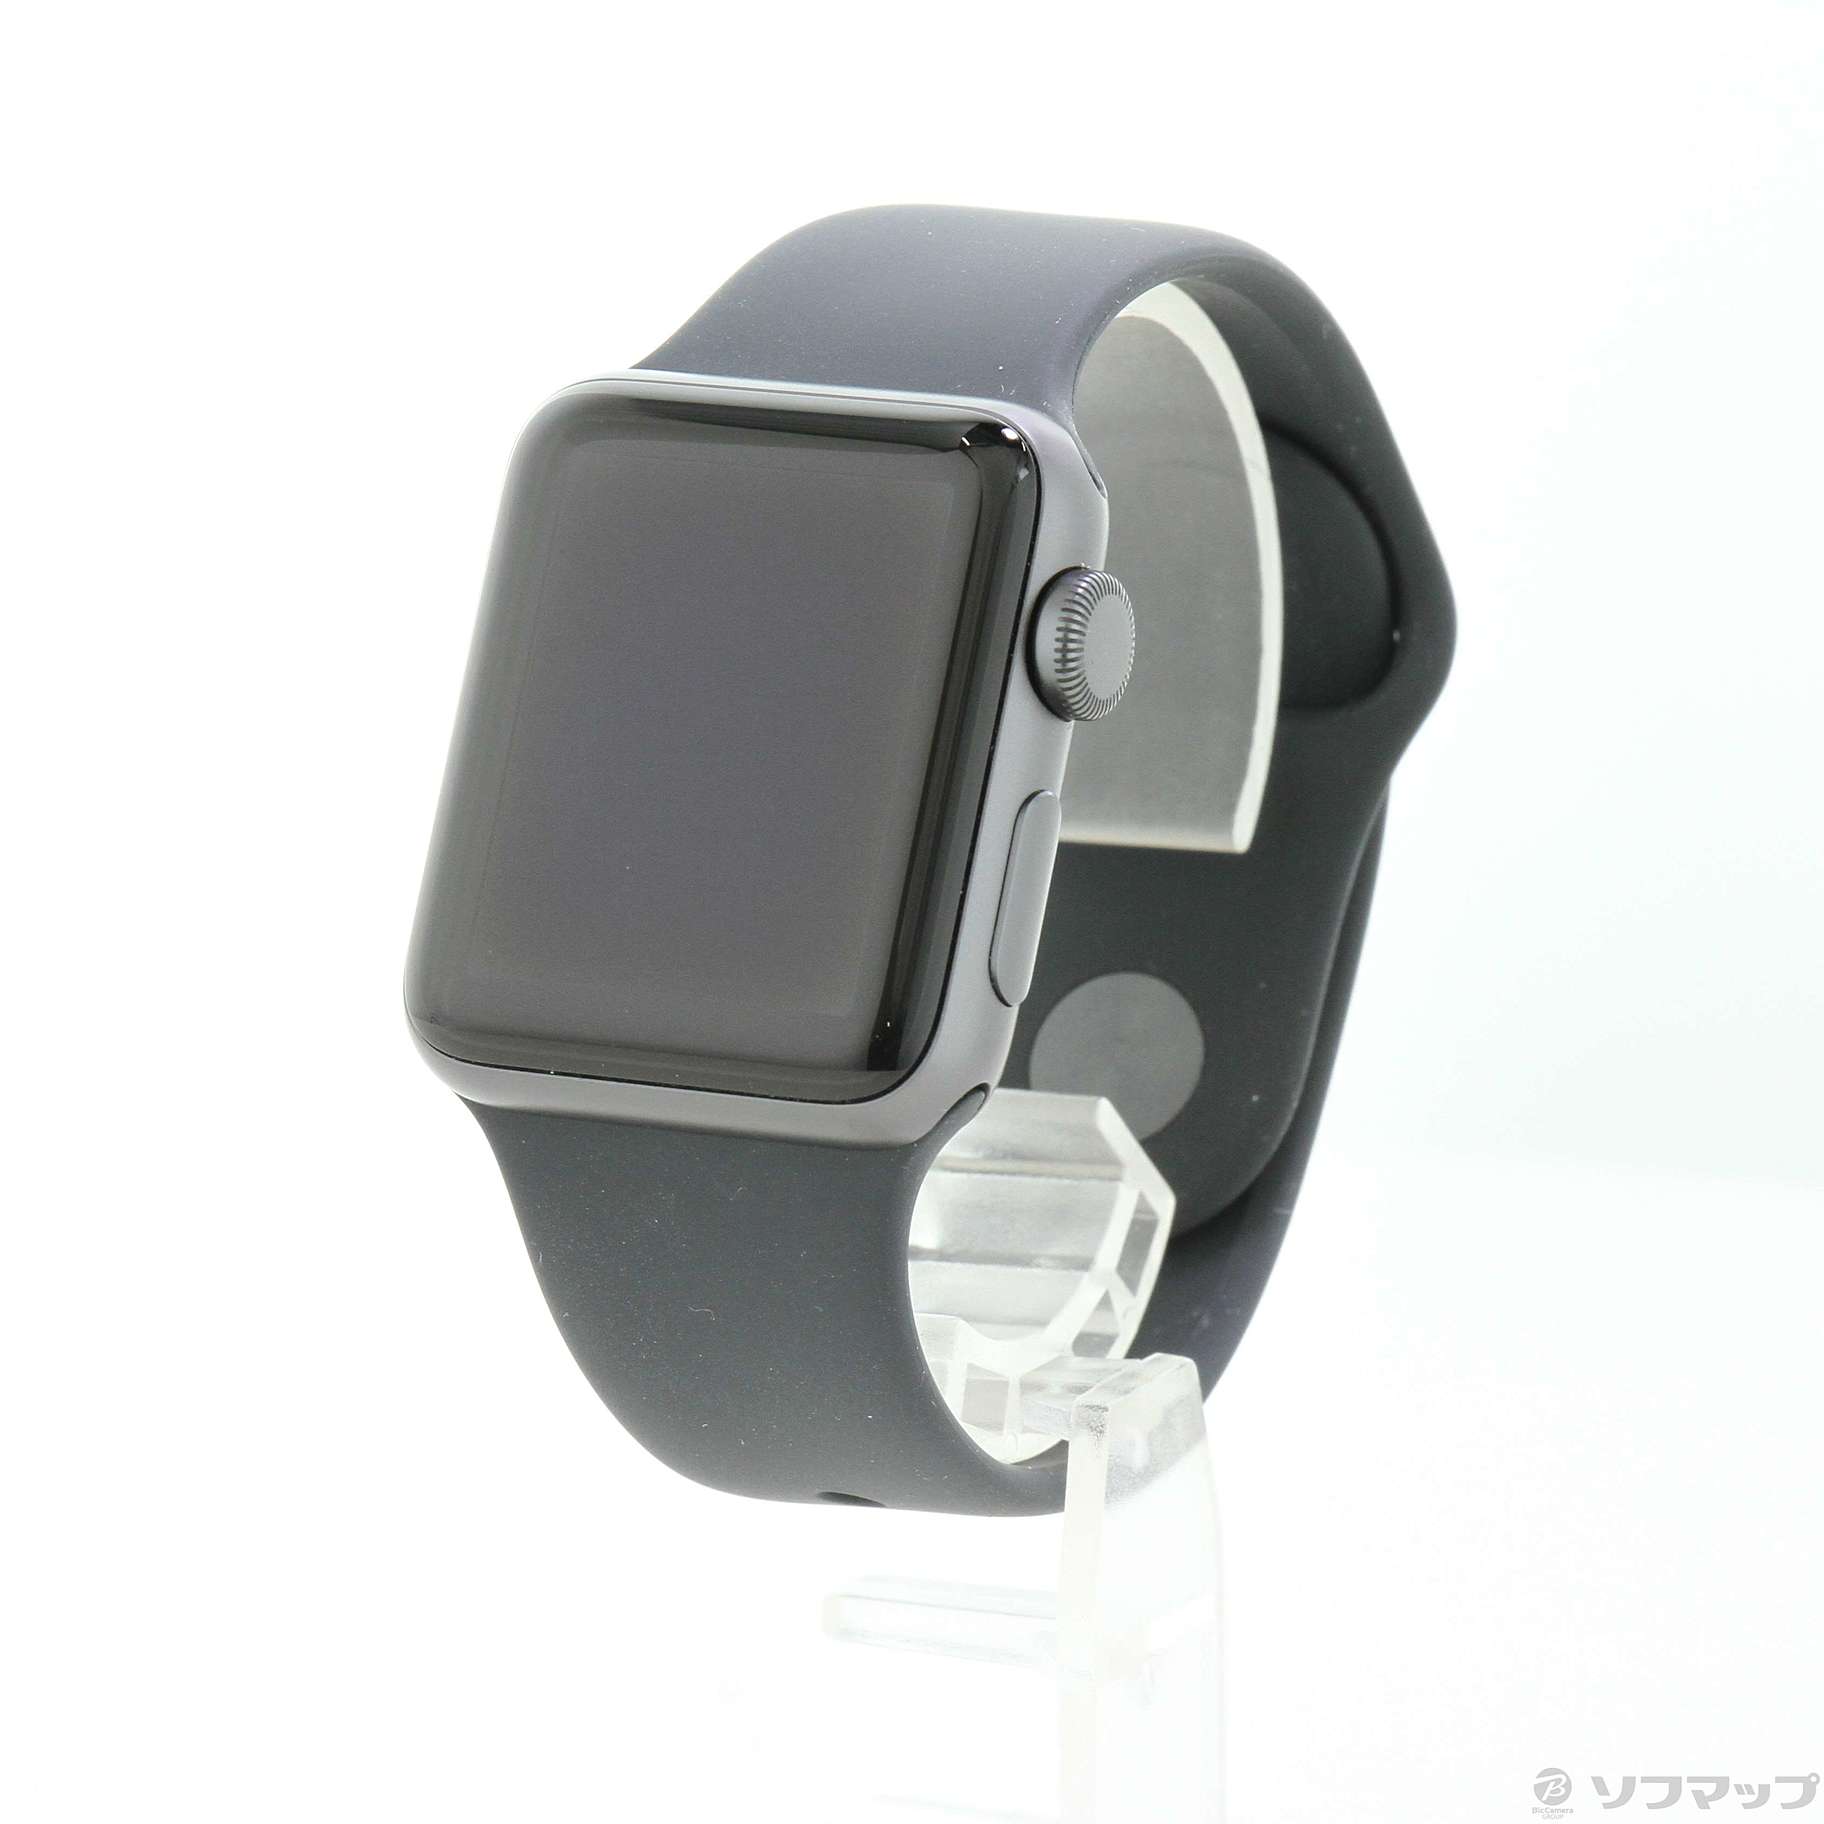 〔中古品〕 Apple Watch Series 3 GPS 38mm スペースグレイアルミニウムケース ブラックスポーツバンド